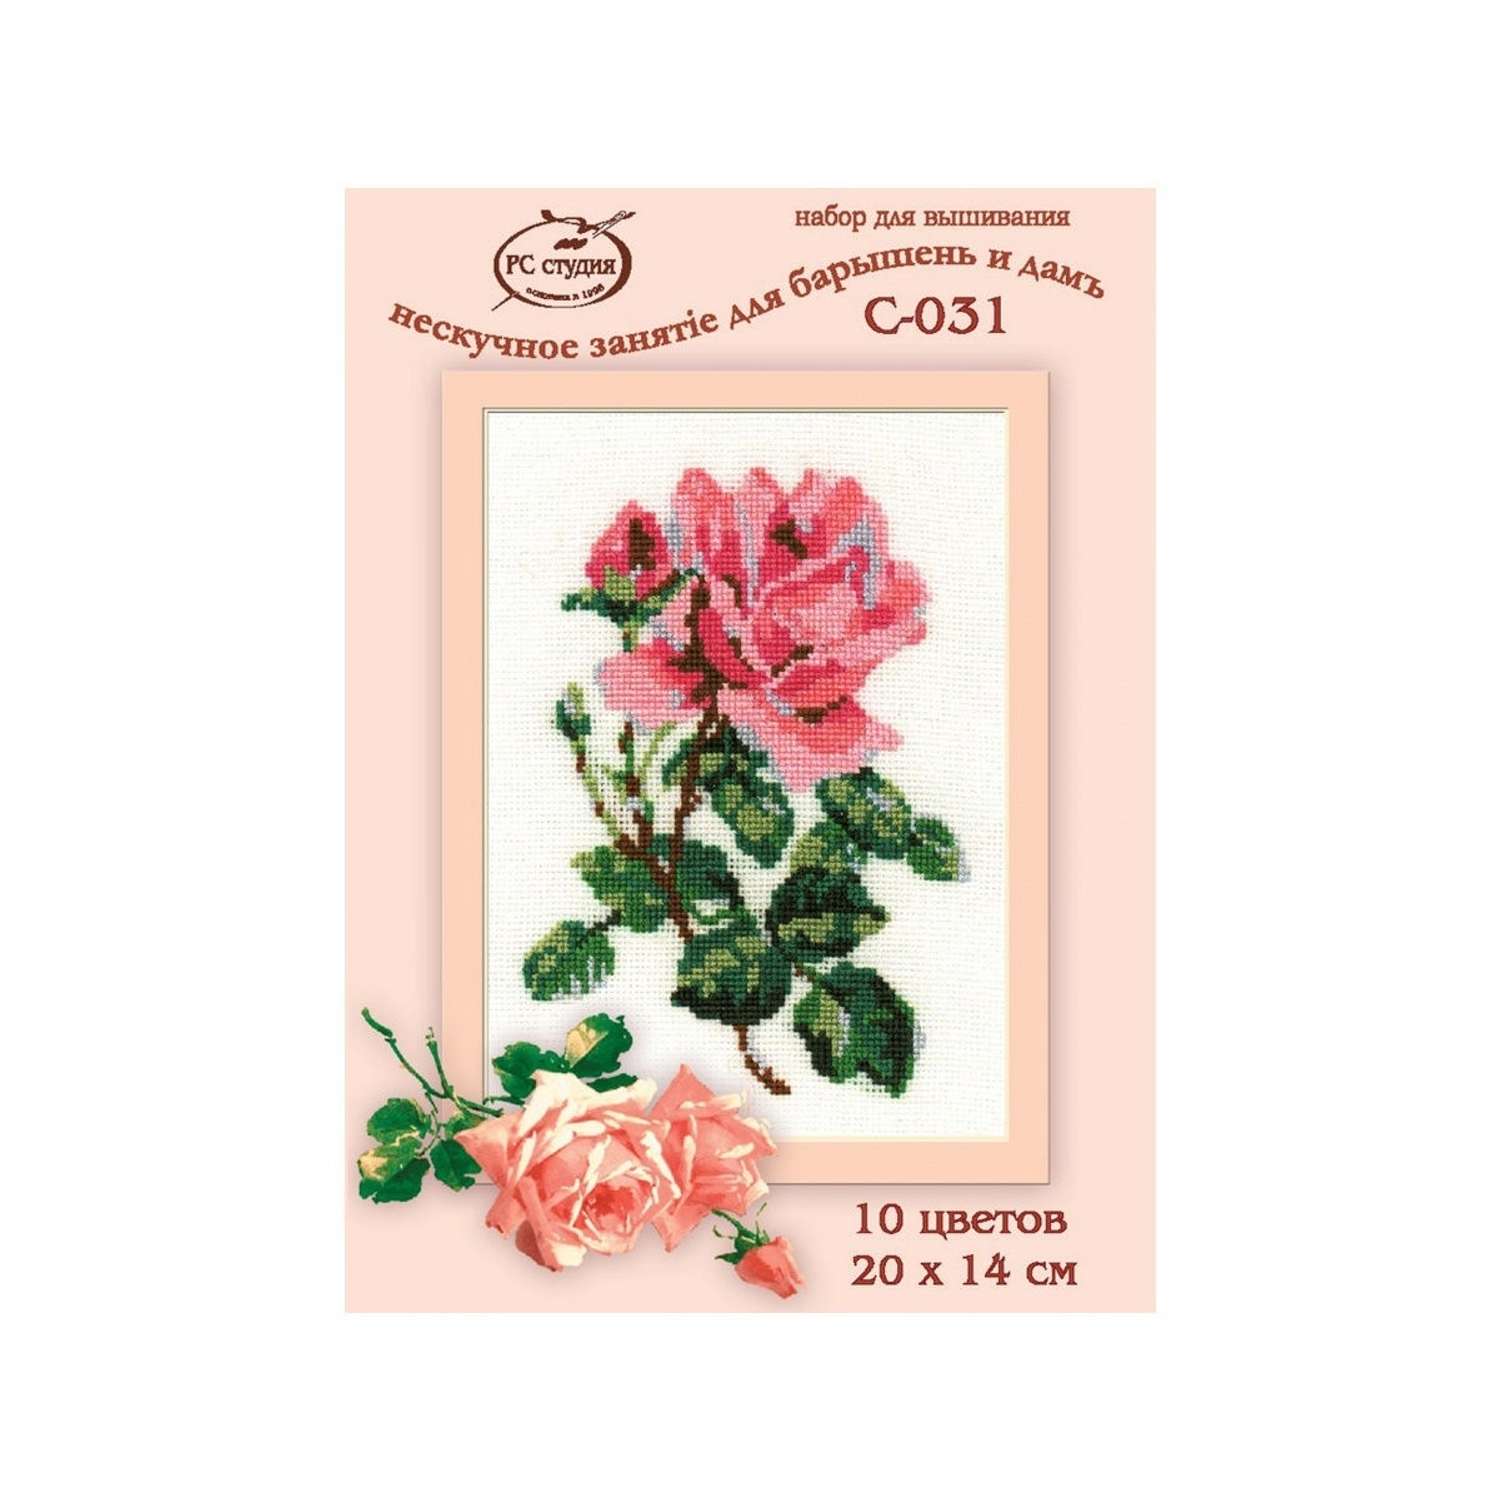 Набор для вышивания РС Студия крестом 031 Роза розовая 20х14см - фото 3